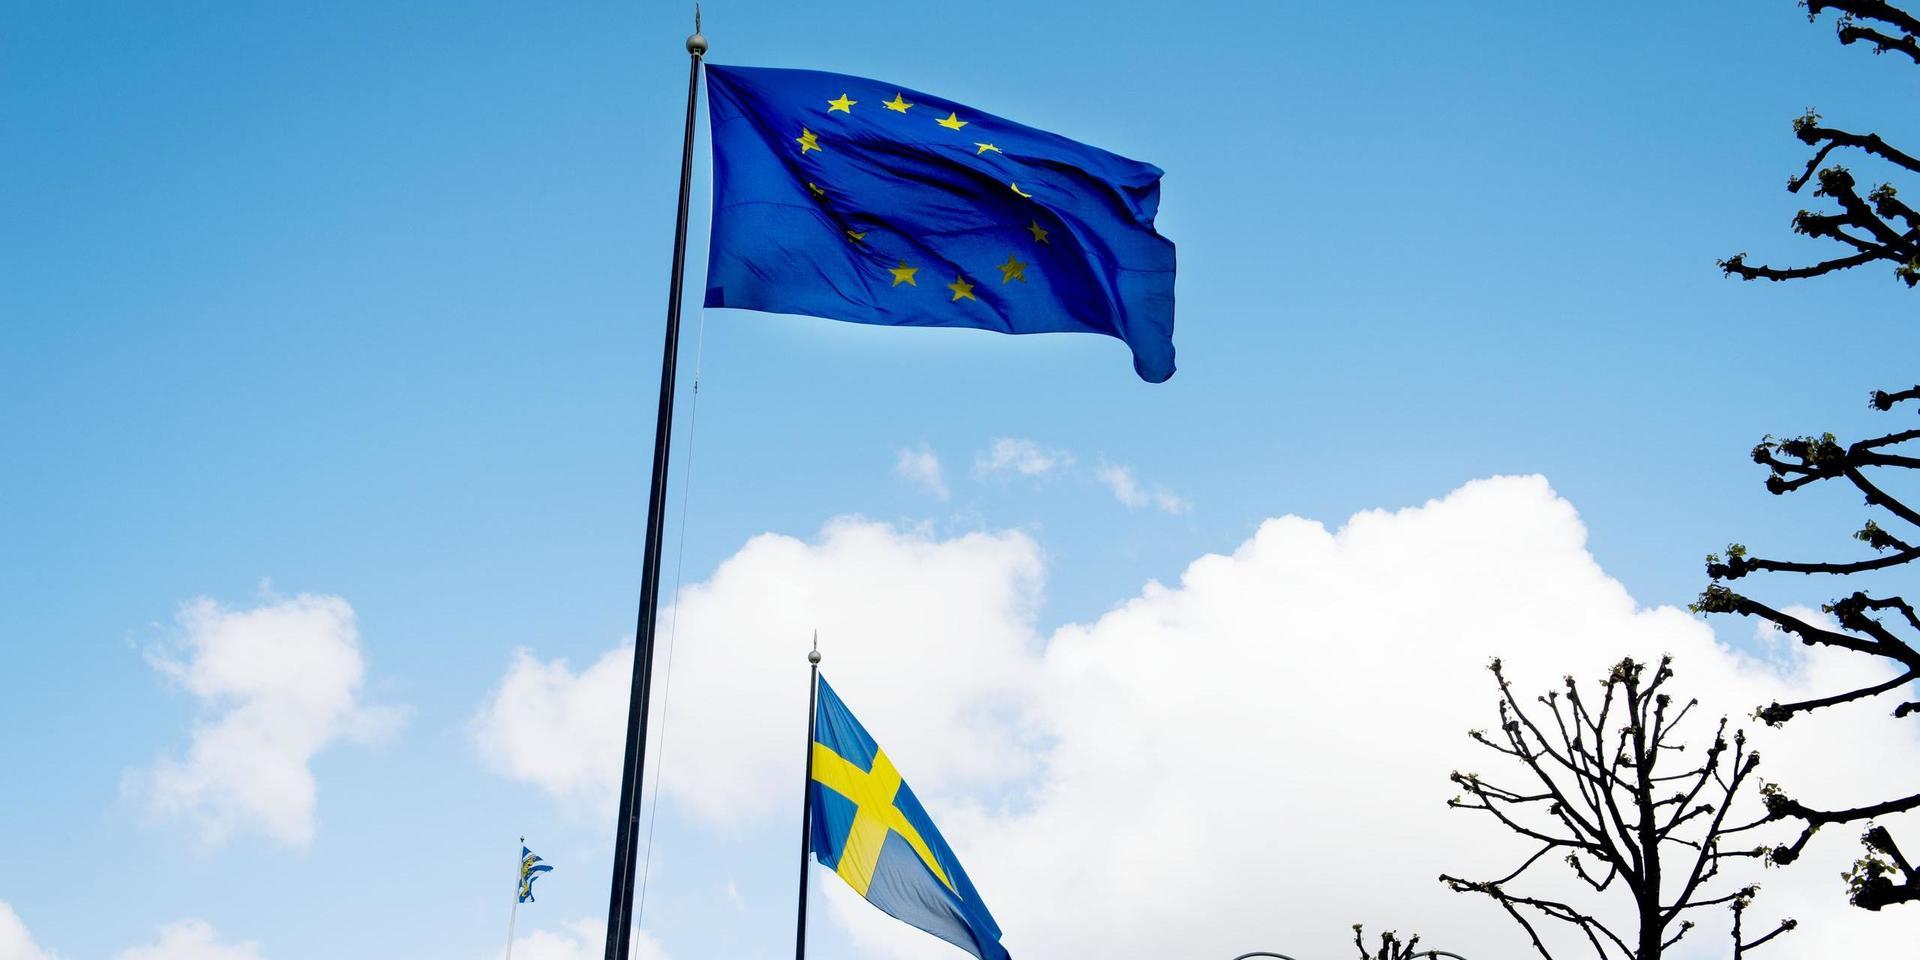 ”Nu är det upp till de övriga partierna att en gång för alla förklara varför man bland annat anser att en avgift på 45 miljarder kronor per år är berättigad”, skriver Peter Lundgren och Matheus Enholm, Sverigedemokraterna.